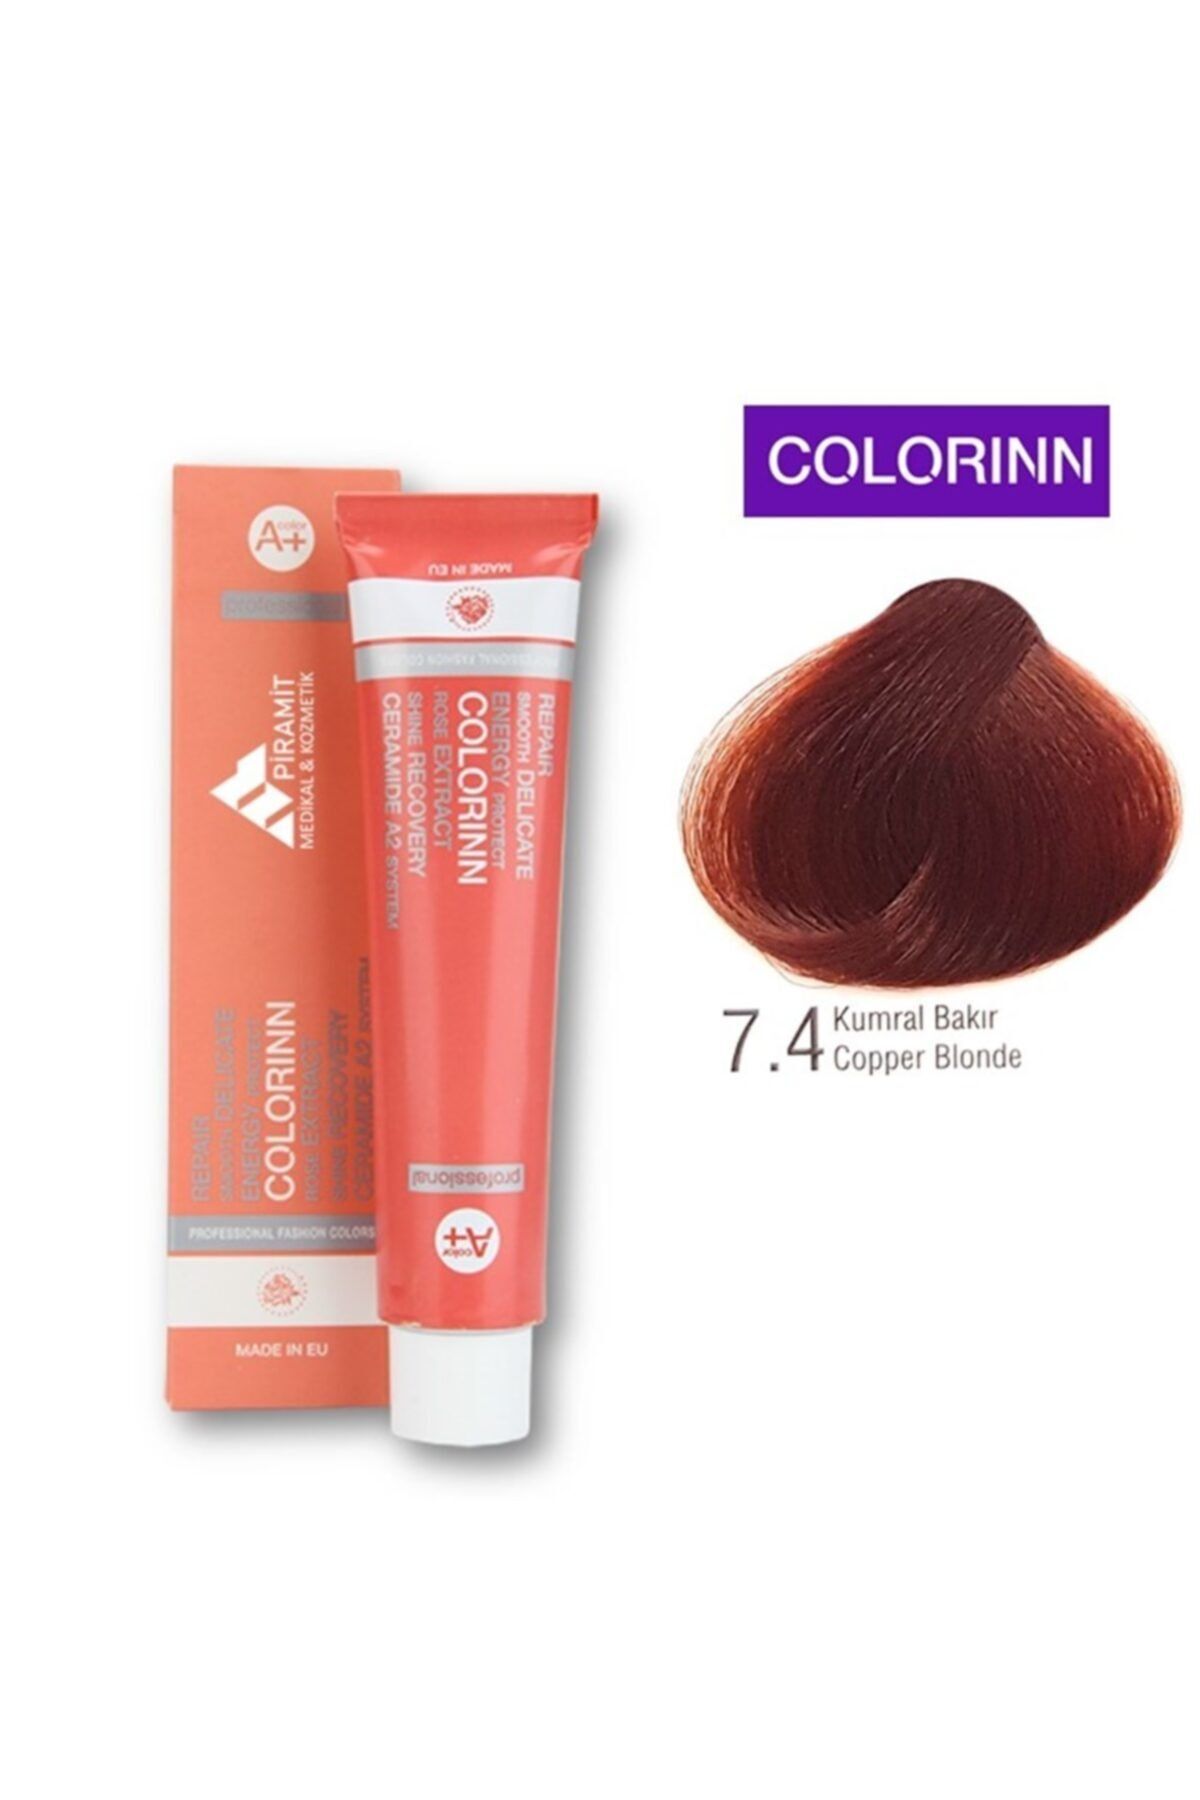 Colorinn Professional Saç Boyası 7.4 Kumral Bakır